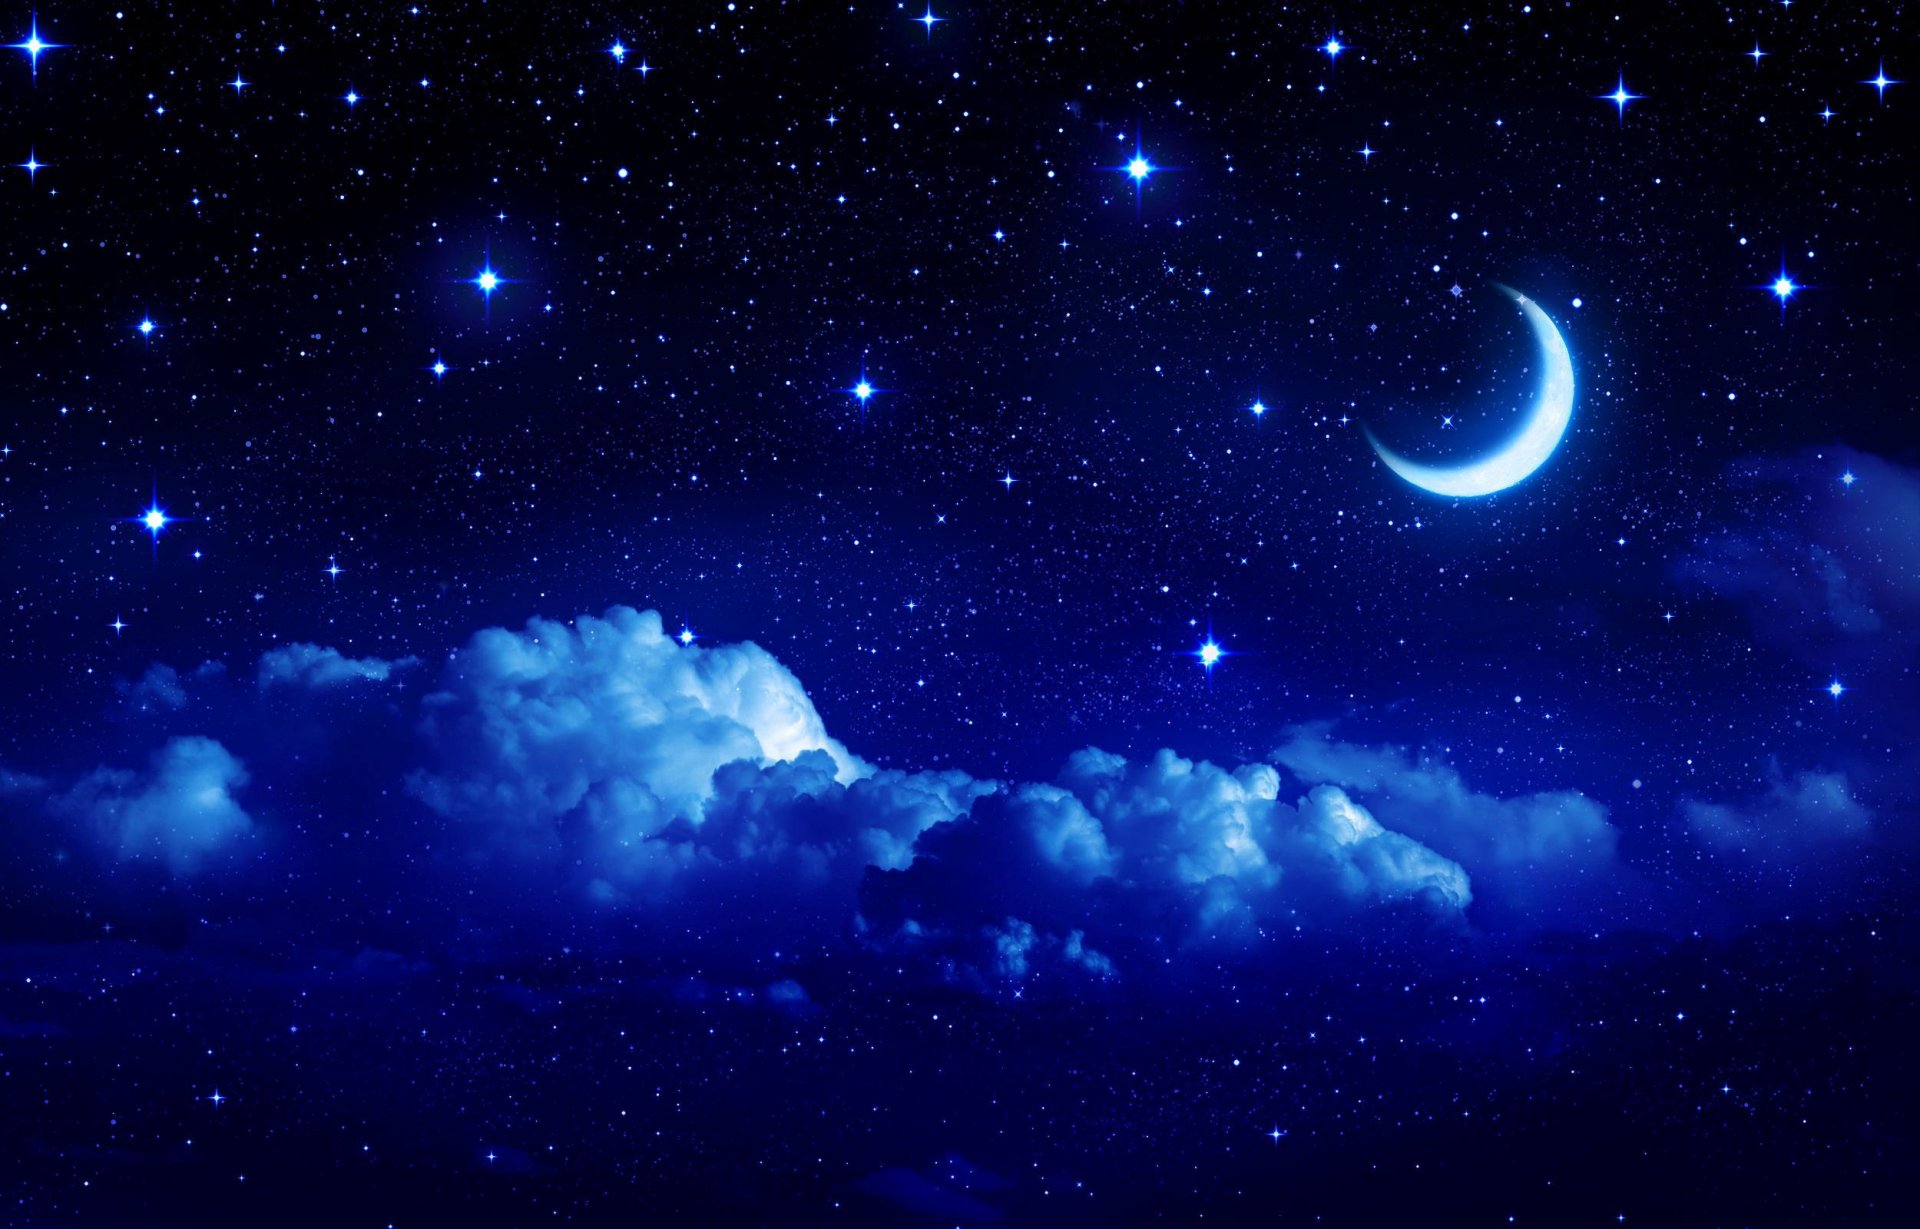 пейзаж звезды небо луна месяц полумесяц облако облака ночь сказка фон обои широкоформатные полноэкранные широкоэкранные широкоформатный